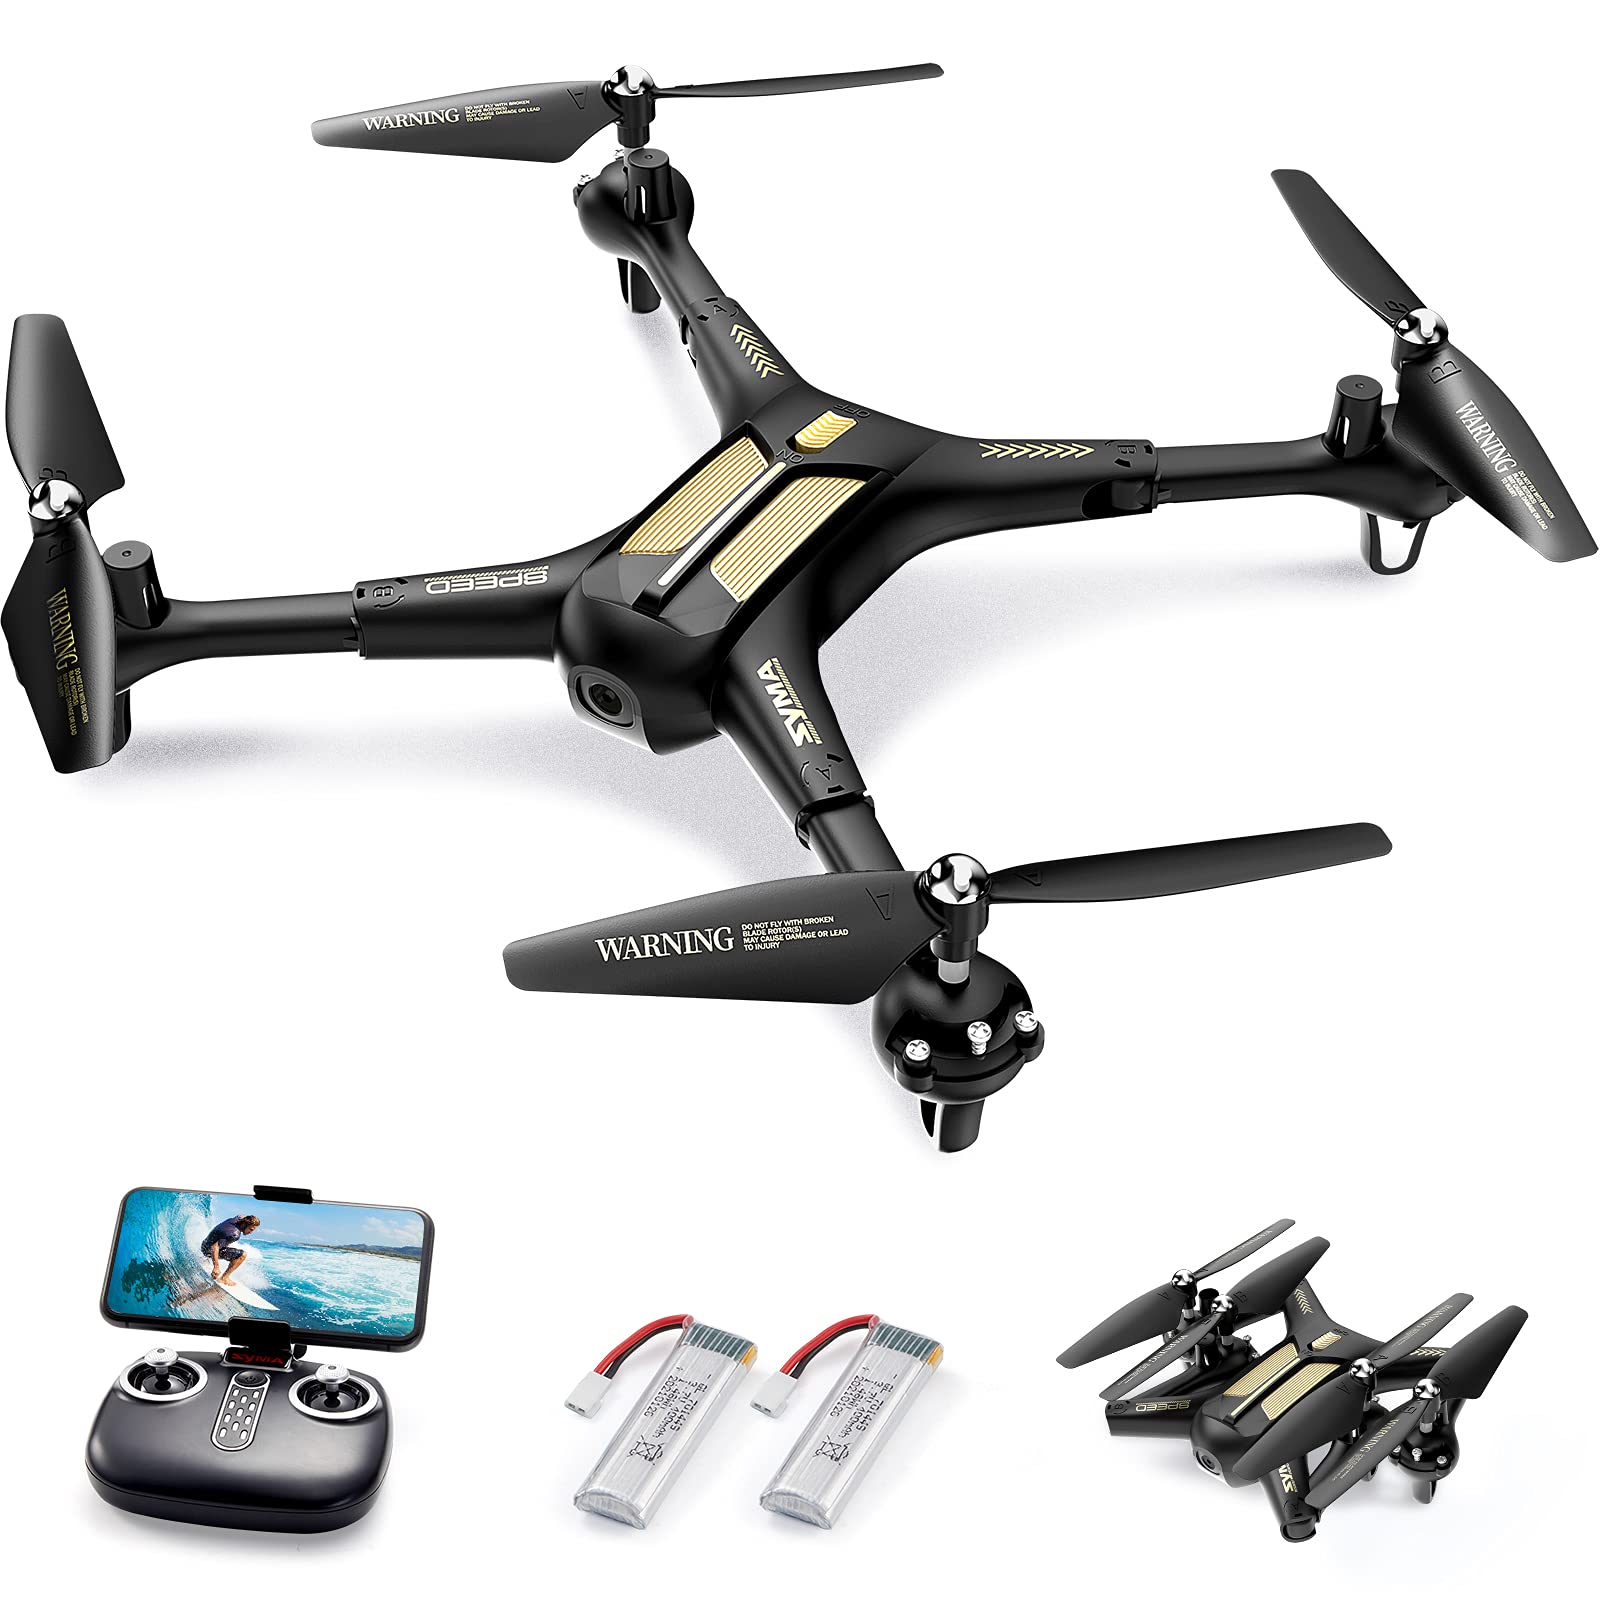 SYMA X600W Faltbare Drohnen mit Kamera für Anfänger 1080P HD FPV Live Video, Gestensteuerung, 2 Geschwindigkeitsmodi, RC Quadcopter mit 2 Batterien für Jungen und Mädchen Spielzeug Geschenk